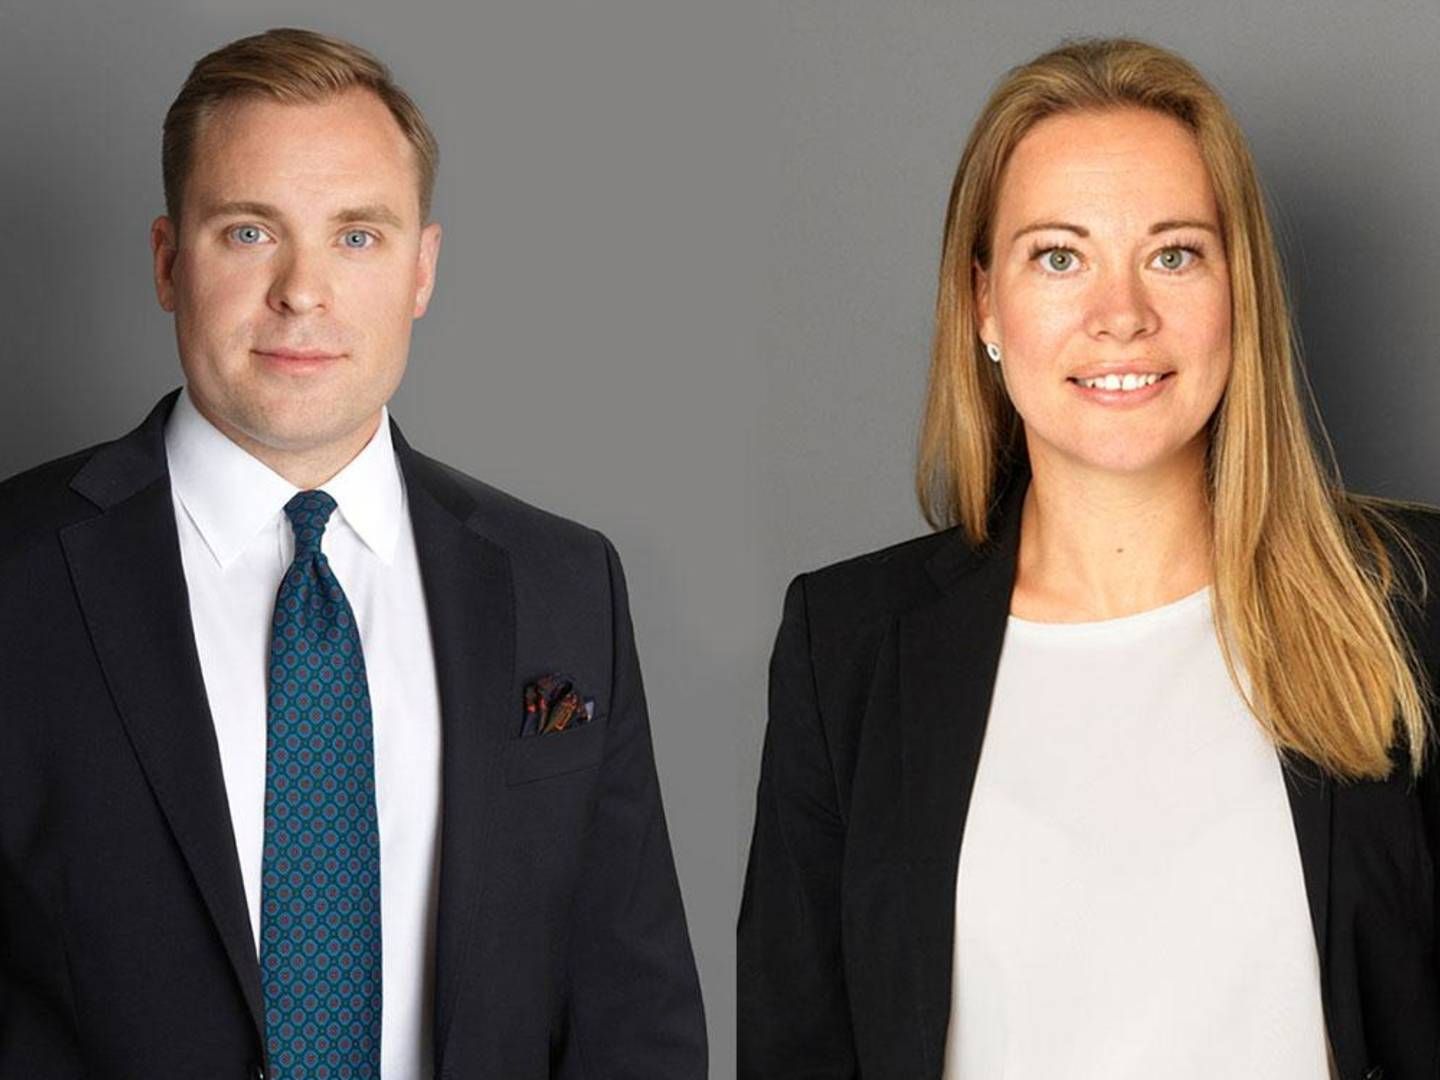 Anders Hagstrøm og Camilla Søgaard Hudson bliver partnere hos Bech-Bruun. | Foto: PR